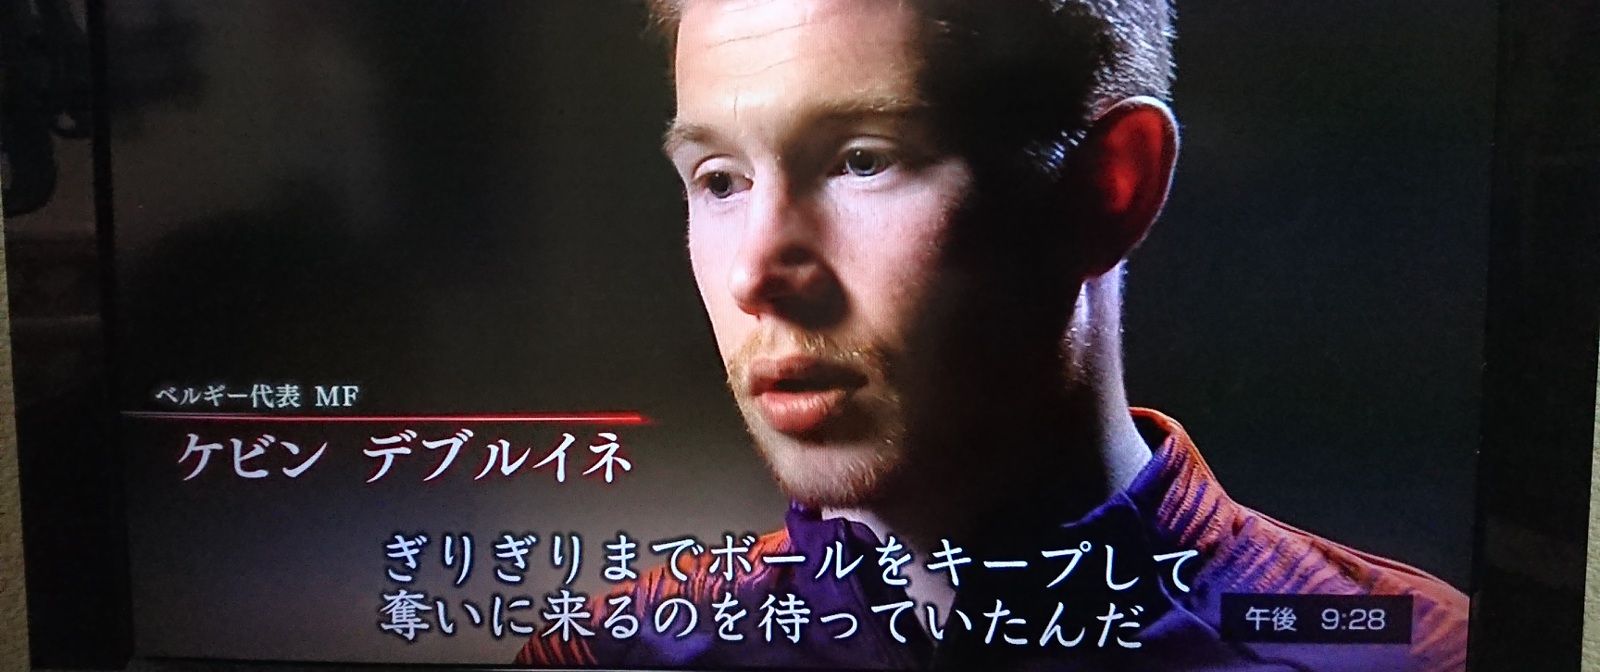 日本代表 ロストフの14秒 日本側とベルギー側の思惑 各選手に映った光景とは マイペースライフ